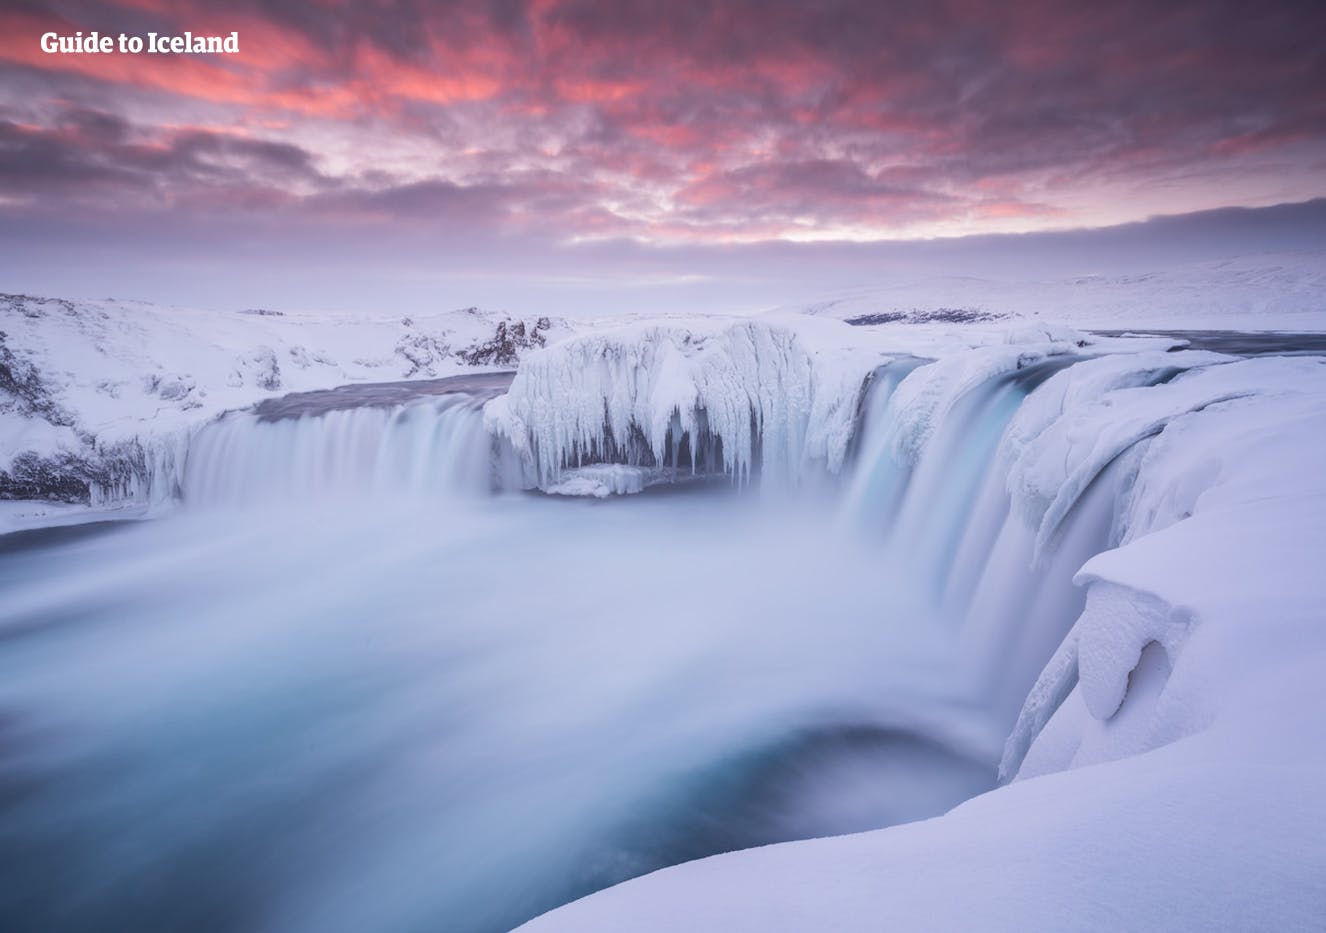 Le cascate dell'Islanda settentrionale sono bellissime quando sono racchiuse nel ghiaccio invernale.